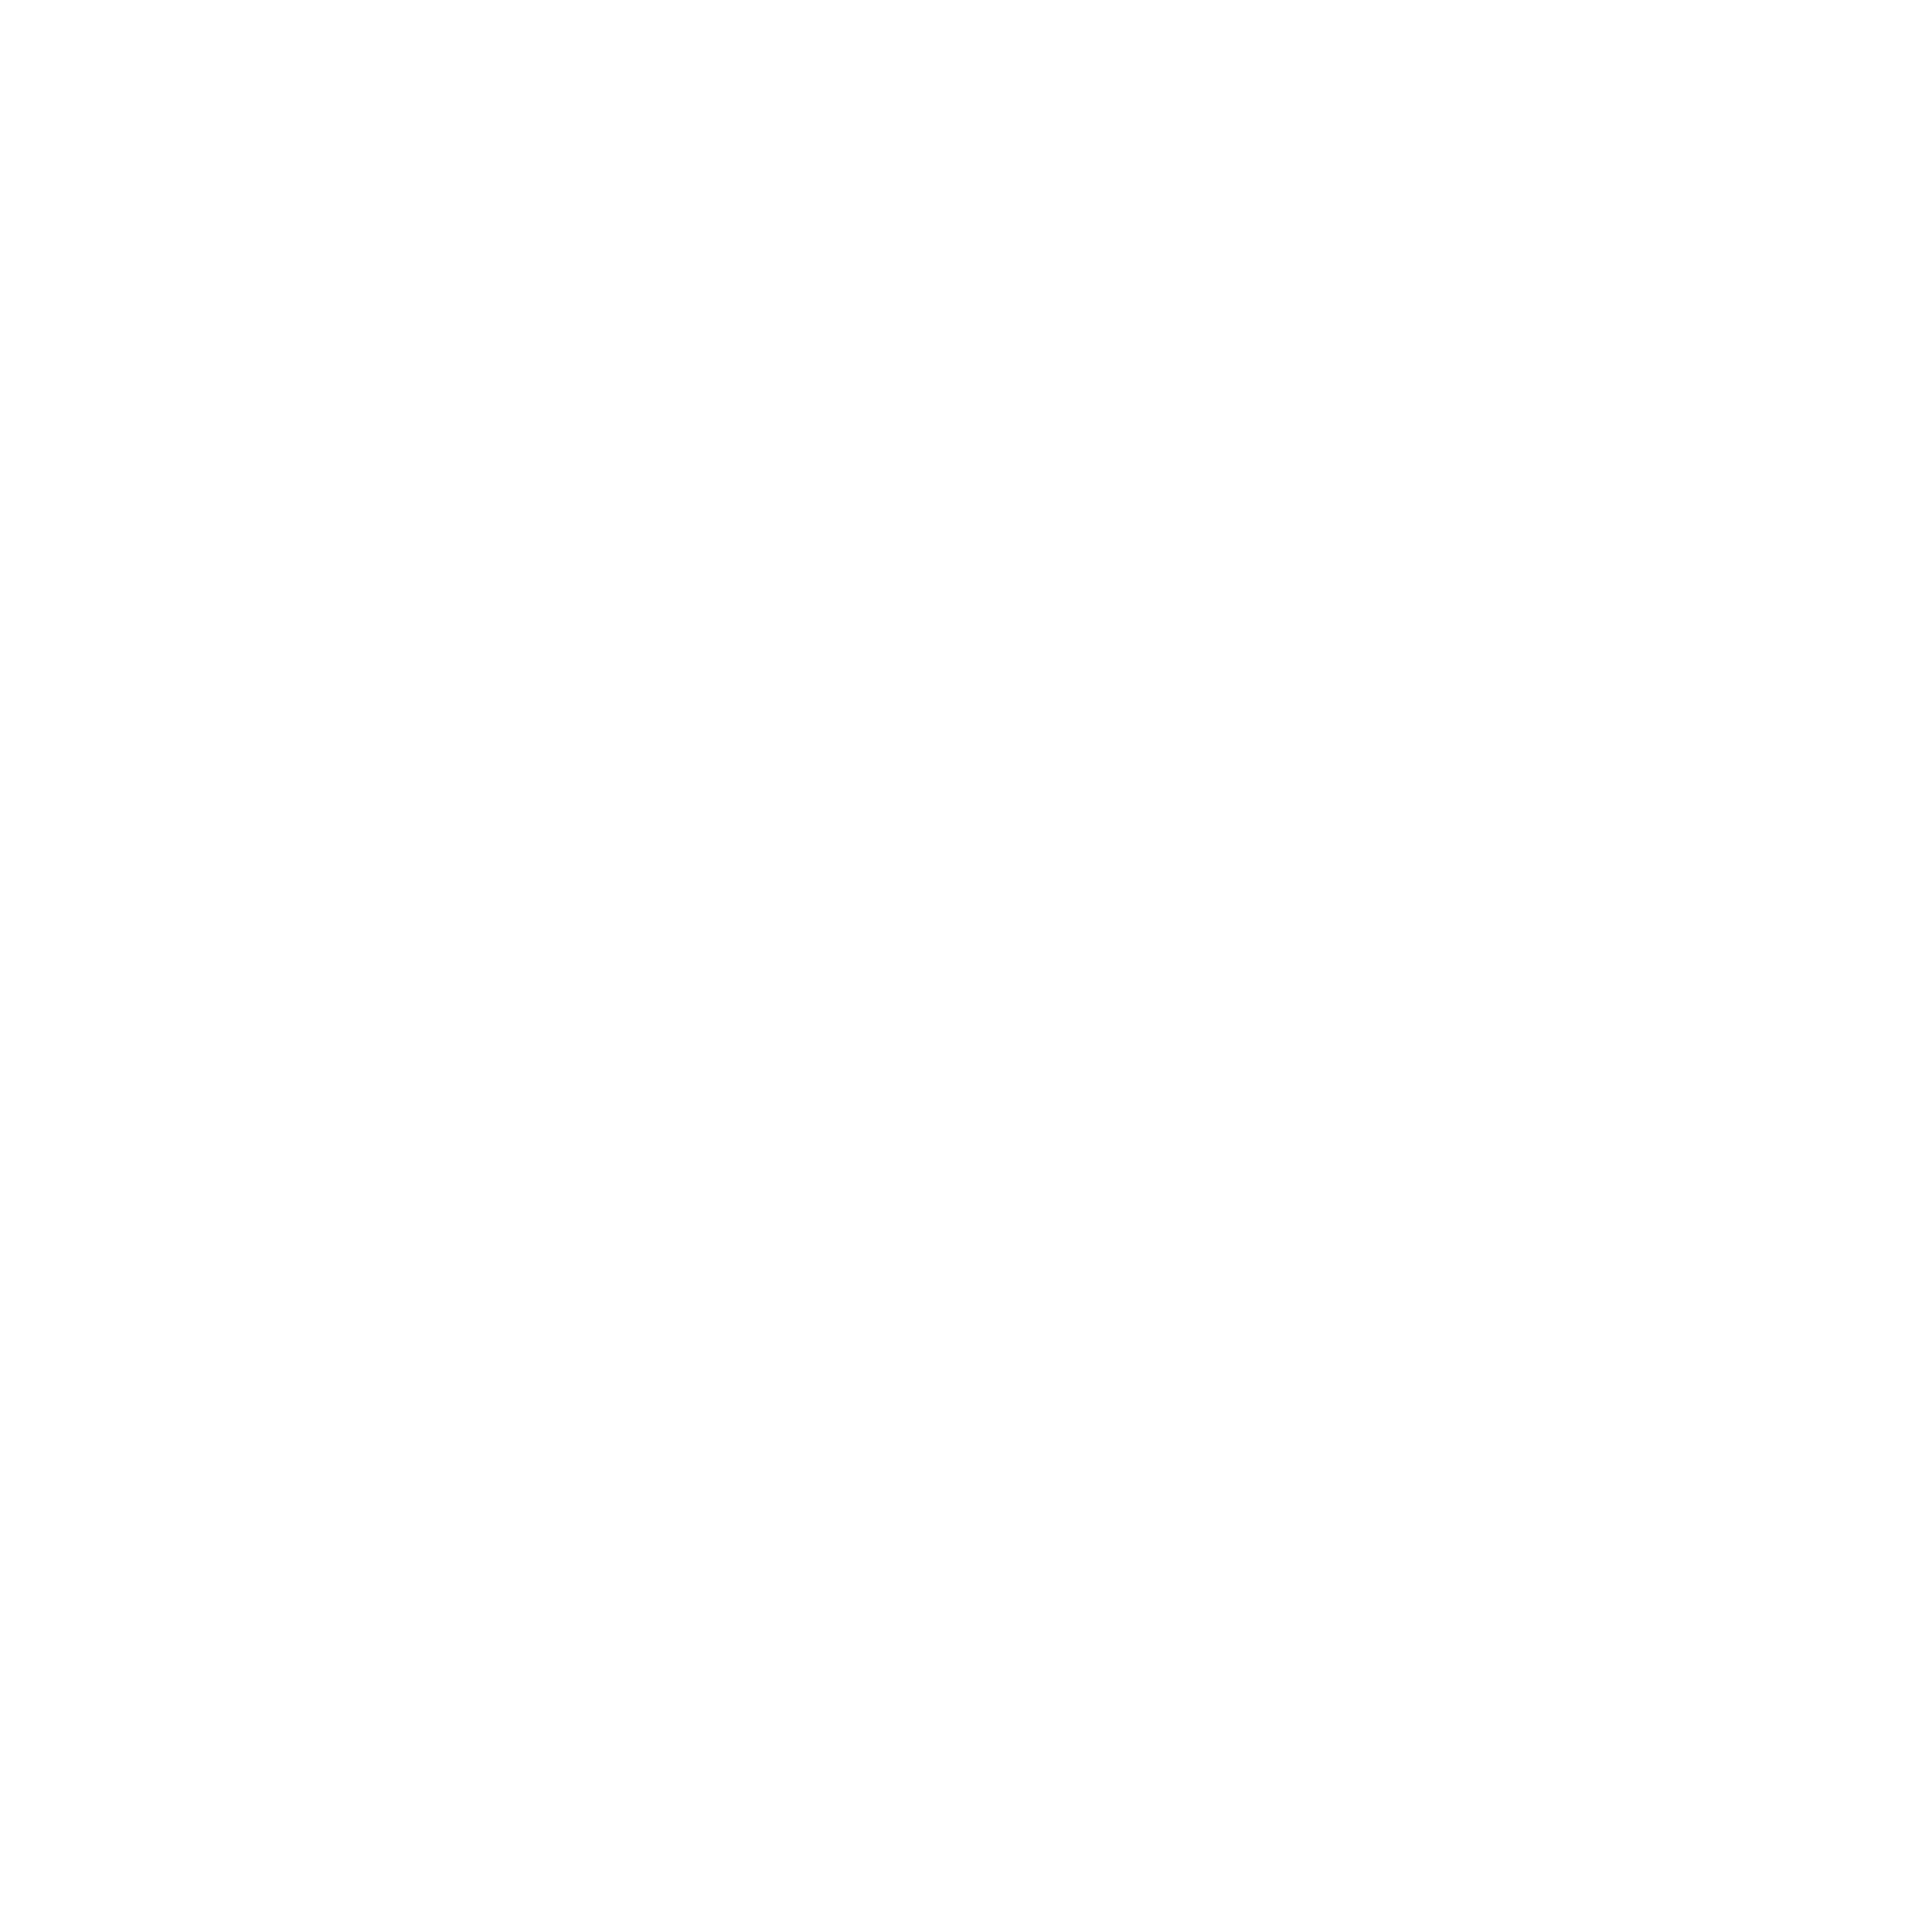 Atco Assembly of God